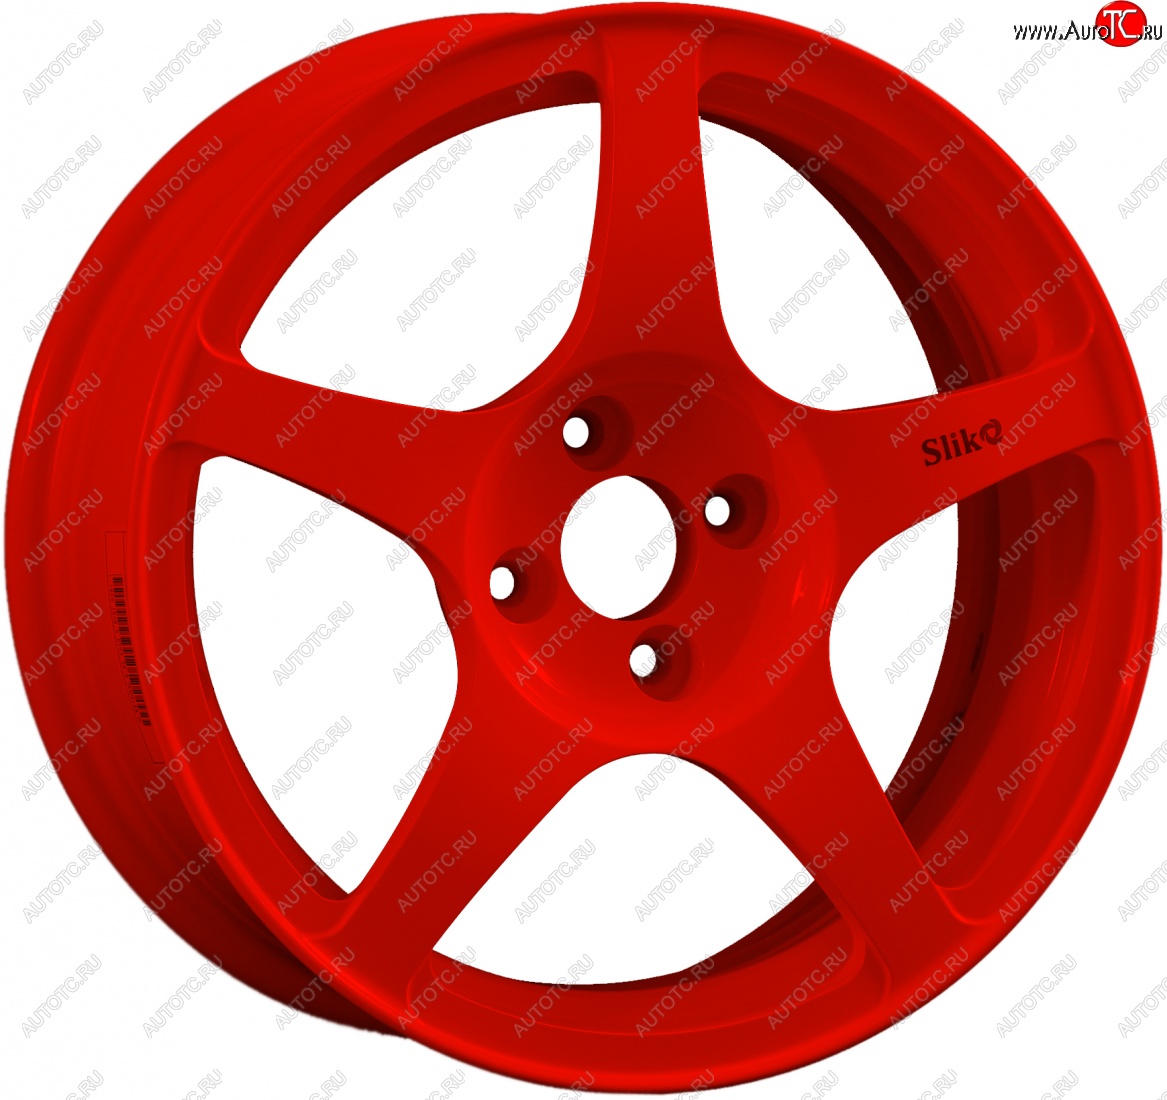 10 349 р. Кованый диск Slik classik R16x6.5 Красный (RED) 6.5x16 Toyota Picnic рестайлинг (2003-2009) 5x114.3xDIA60.1xET45.0 (Цвет: RED)